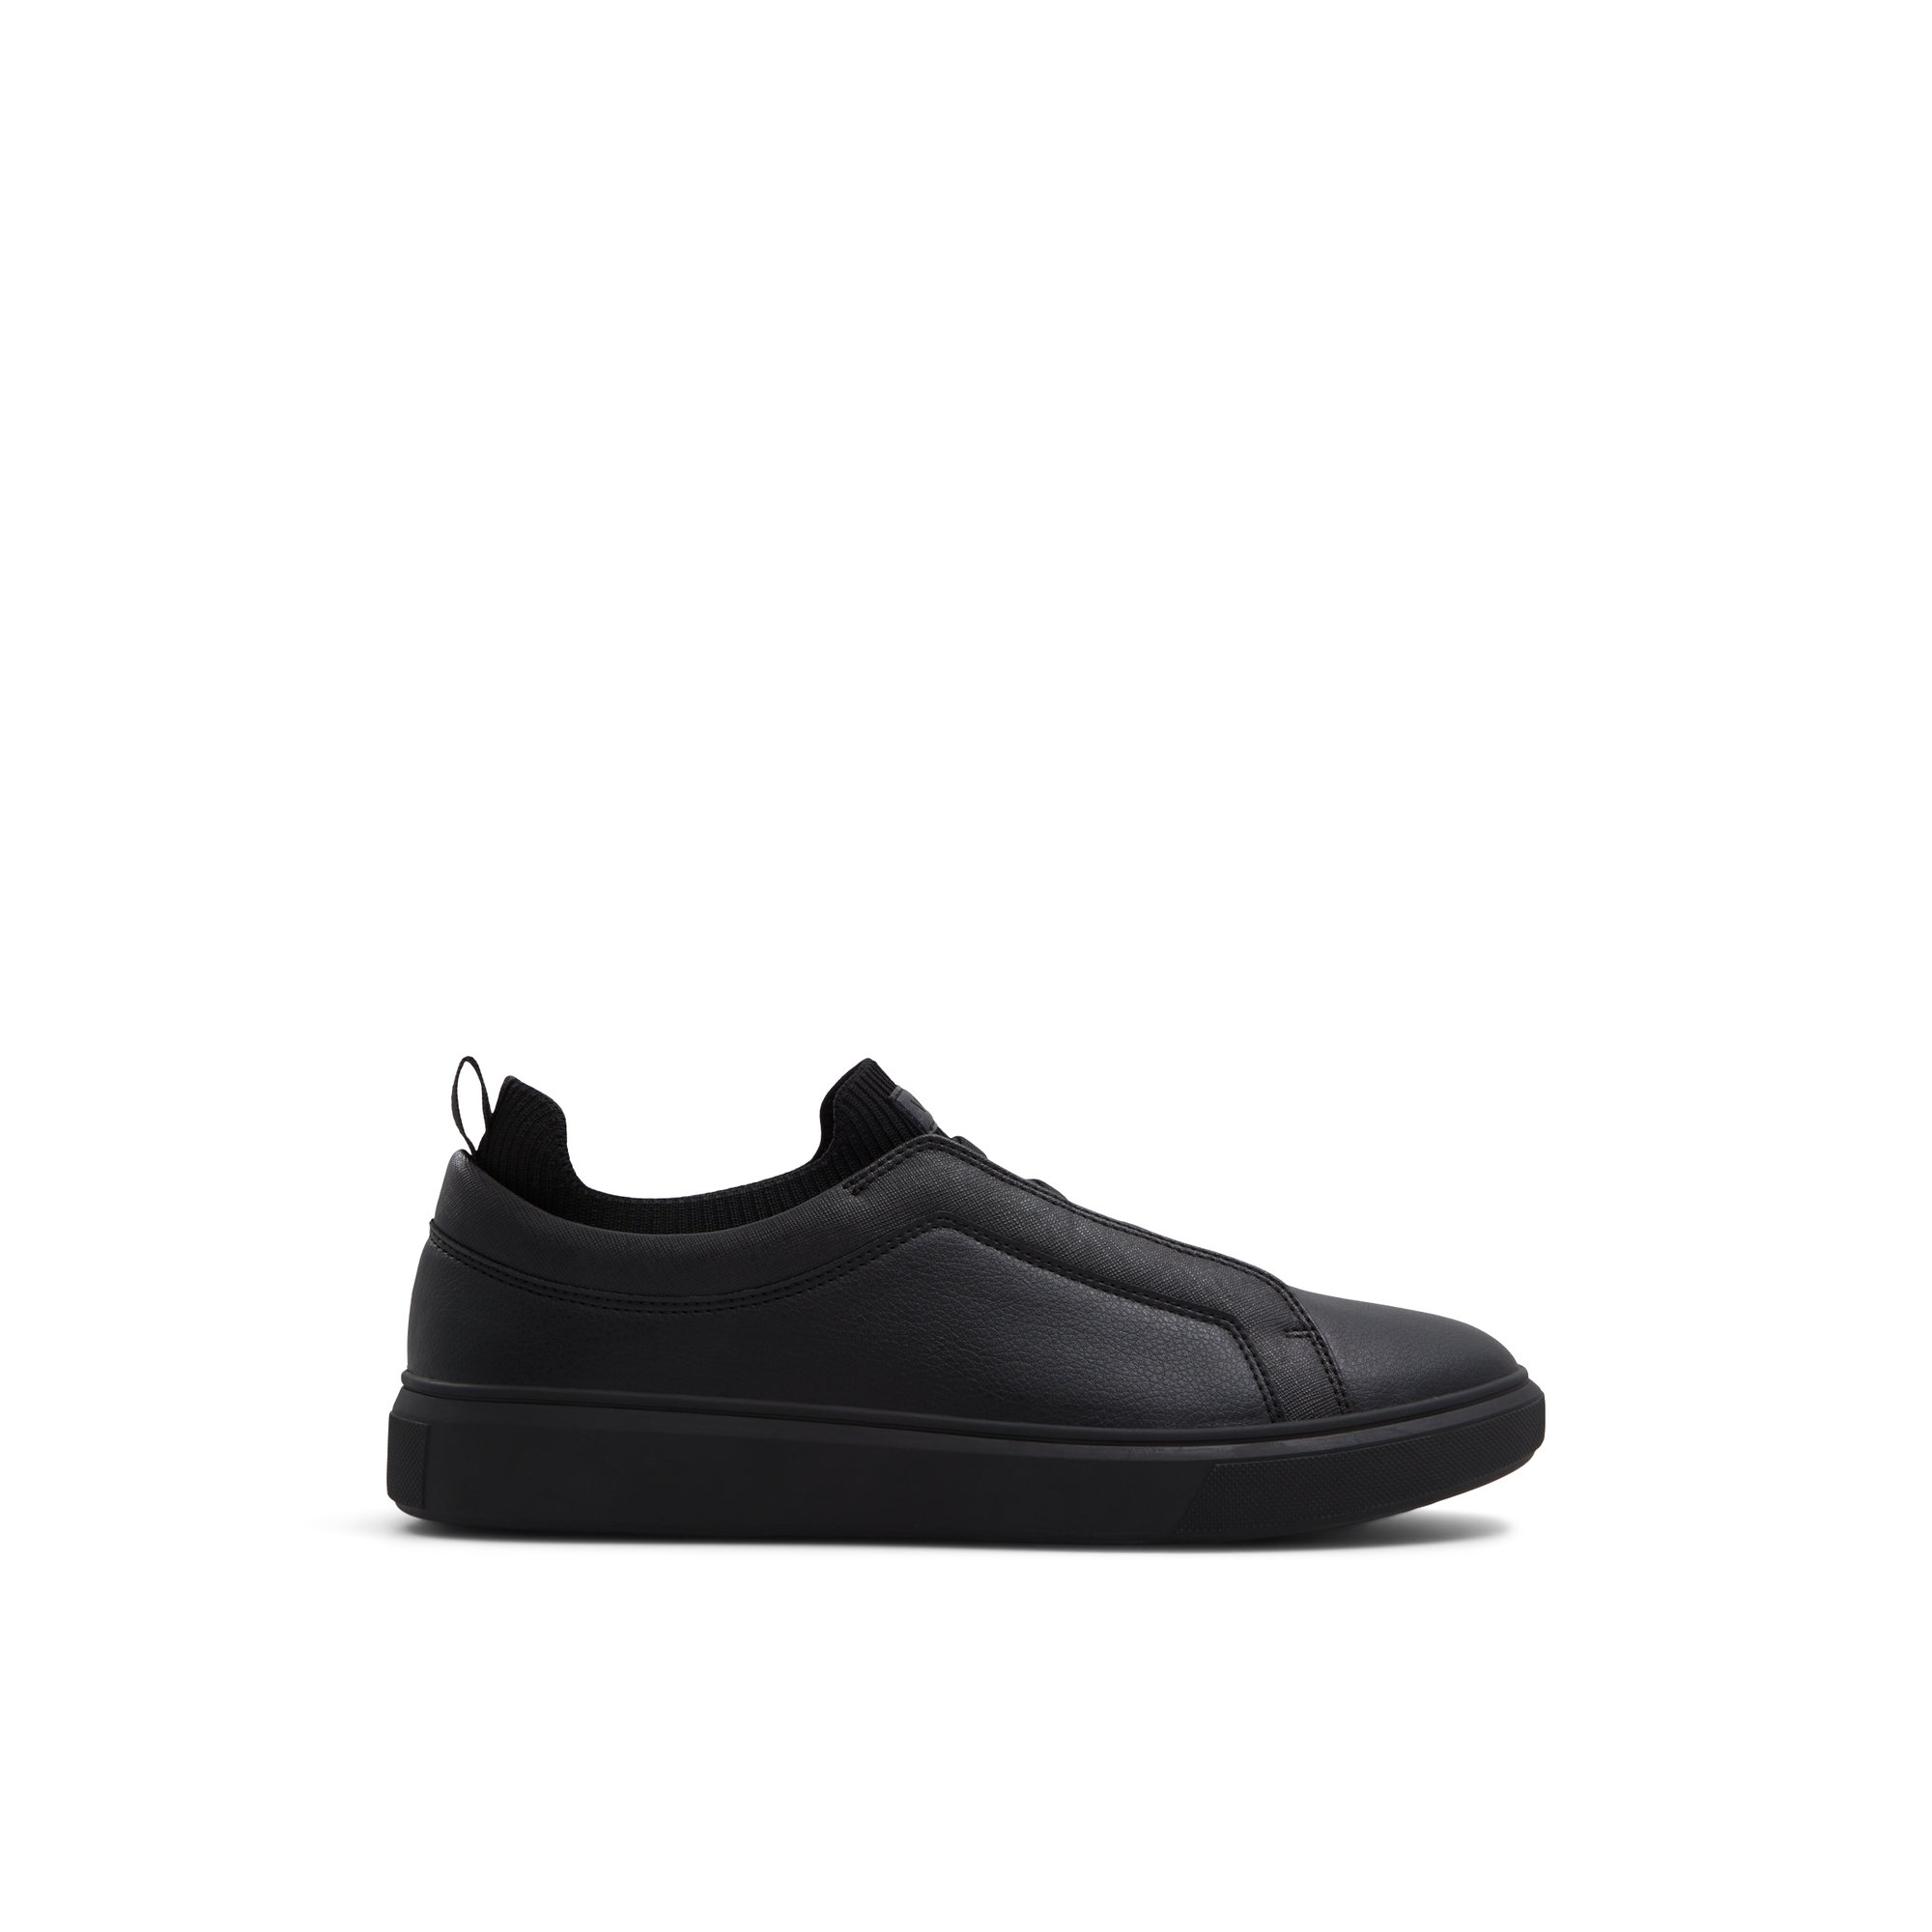 ALDO Midtown - Men's Sneakers Low Top - Black